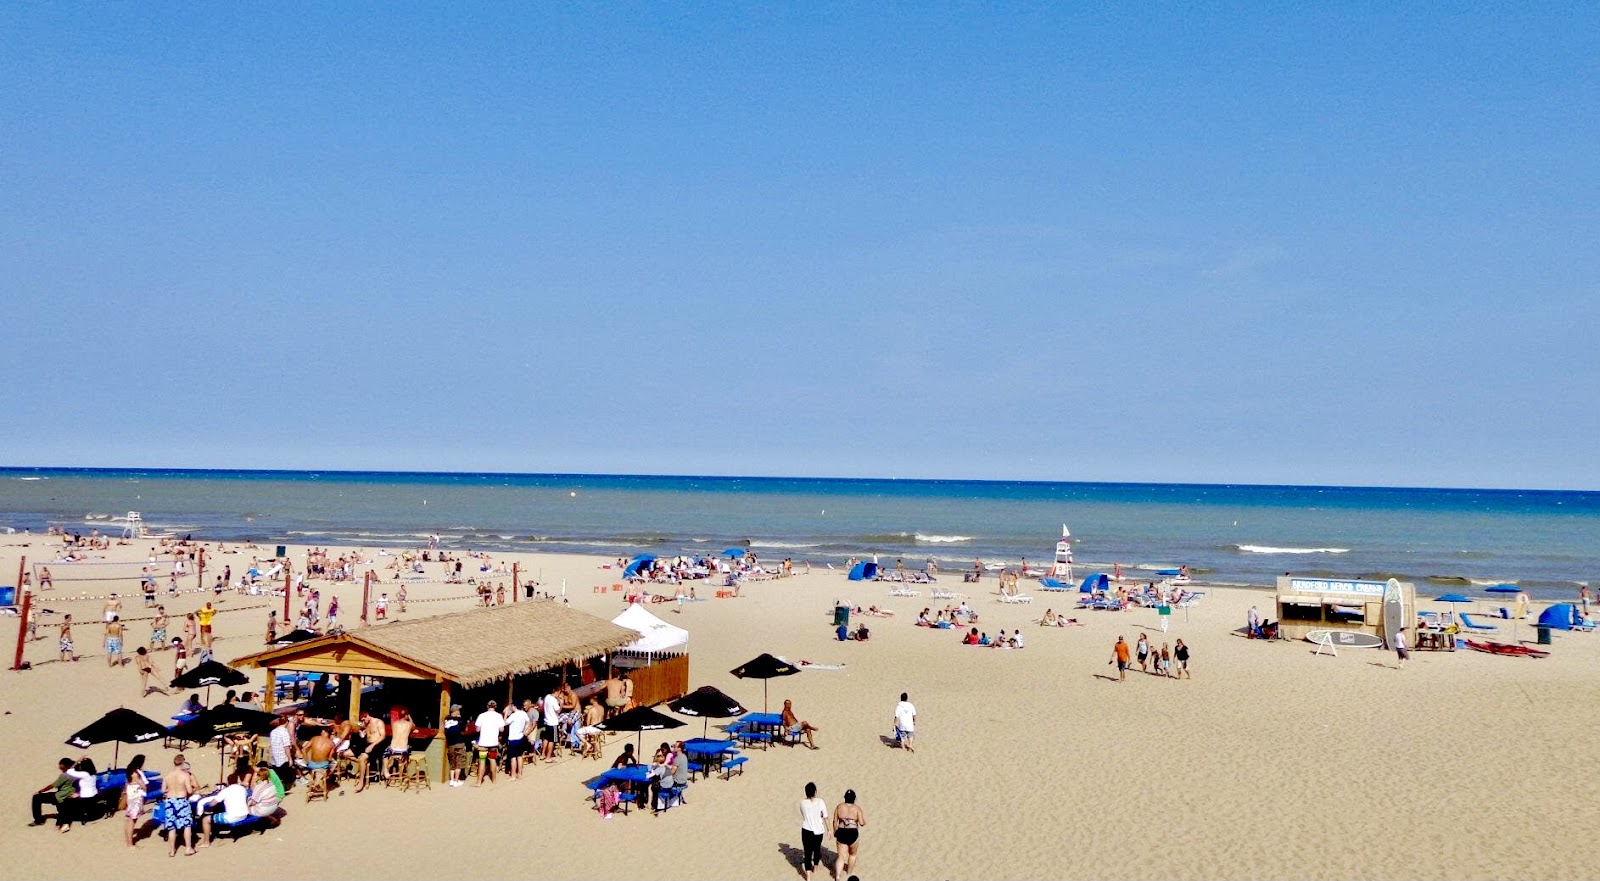 Fotografie cu Bradford Beach - locul popular printre cunoscătorii de relaxare